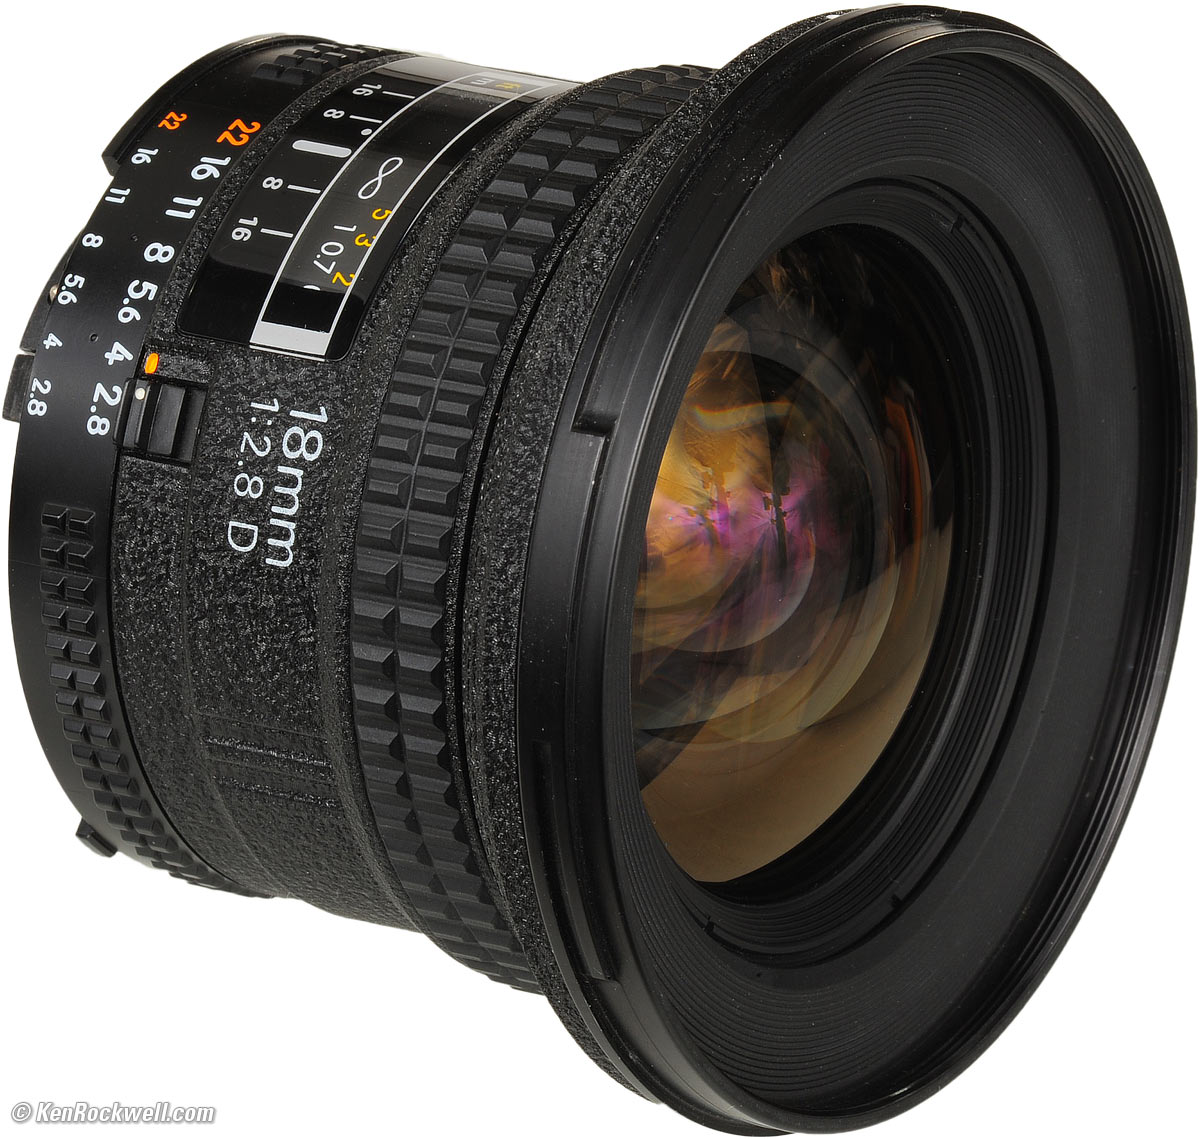 Nikon AF 18mm f/2.8 Review & Sample Images by Ken Rockwell